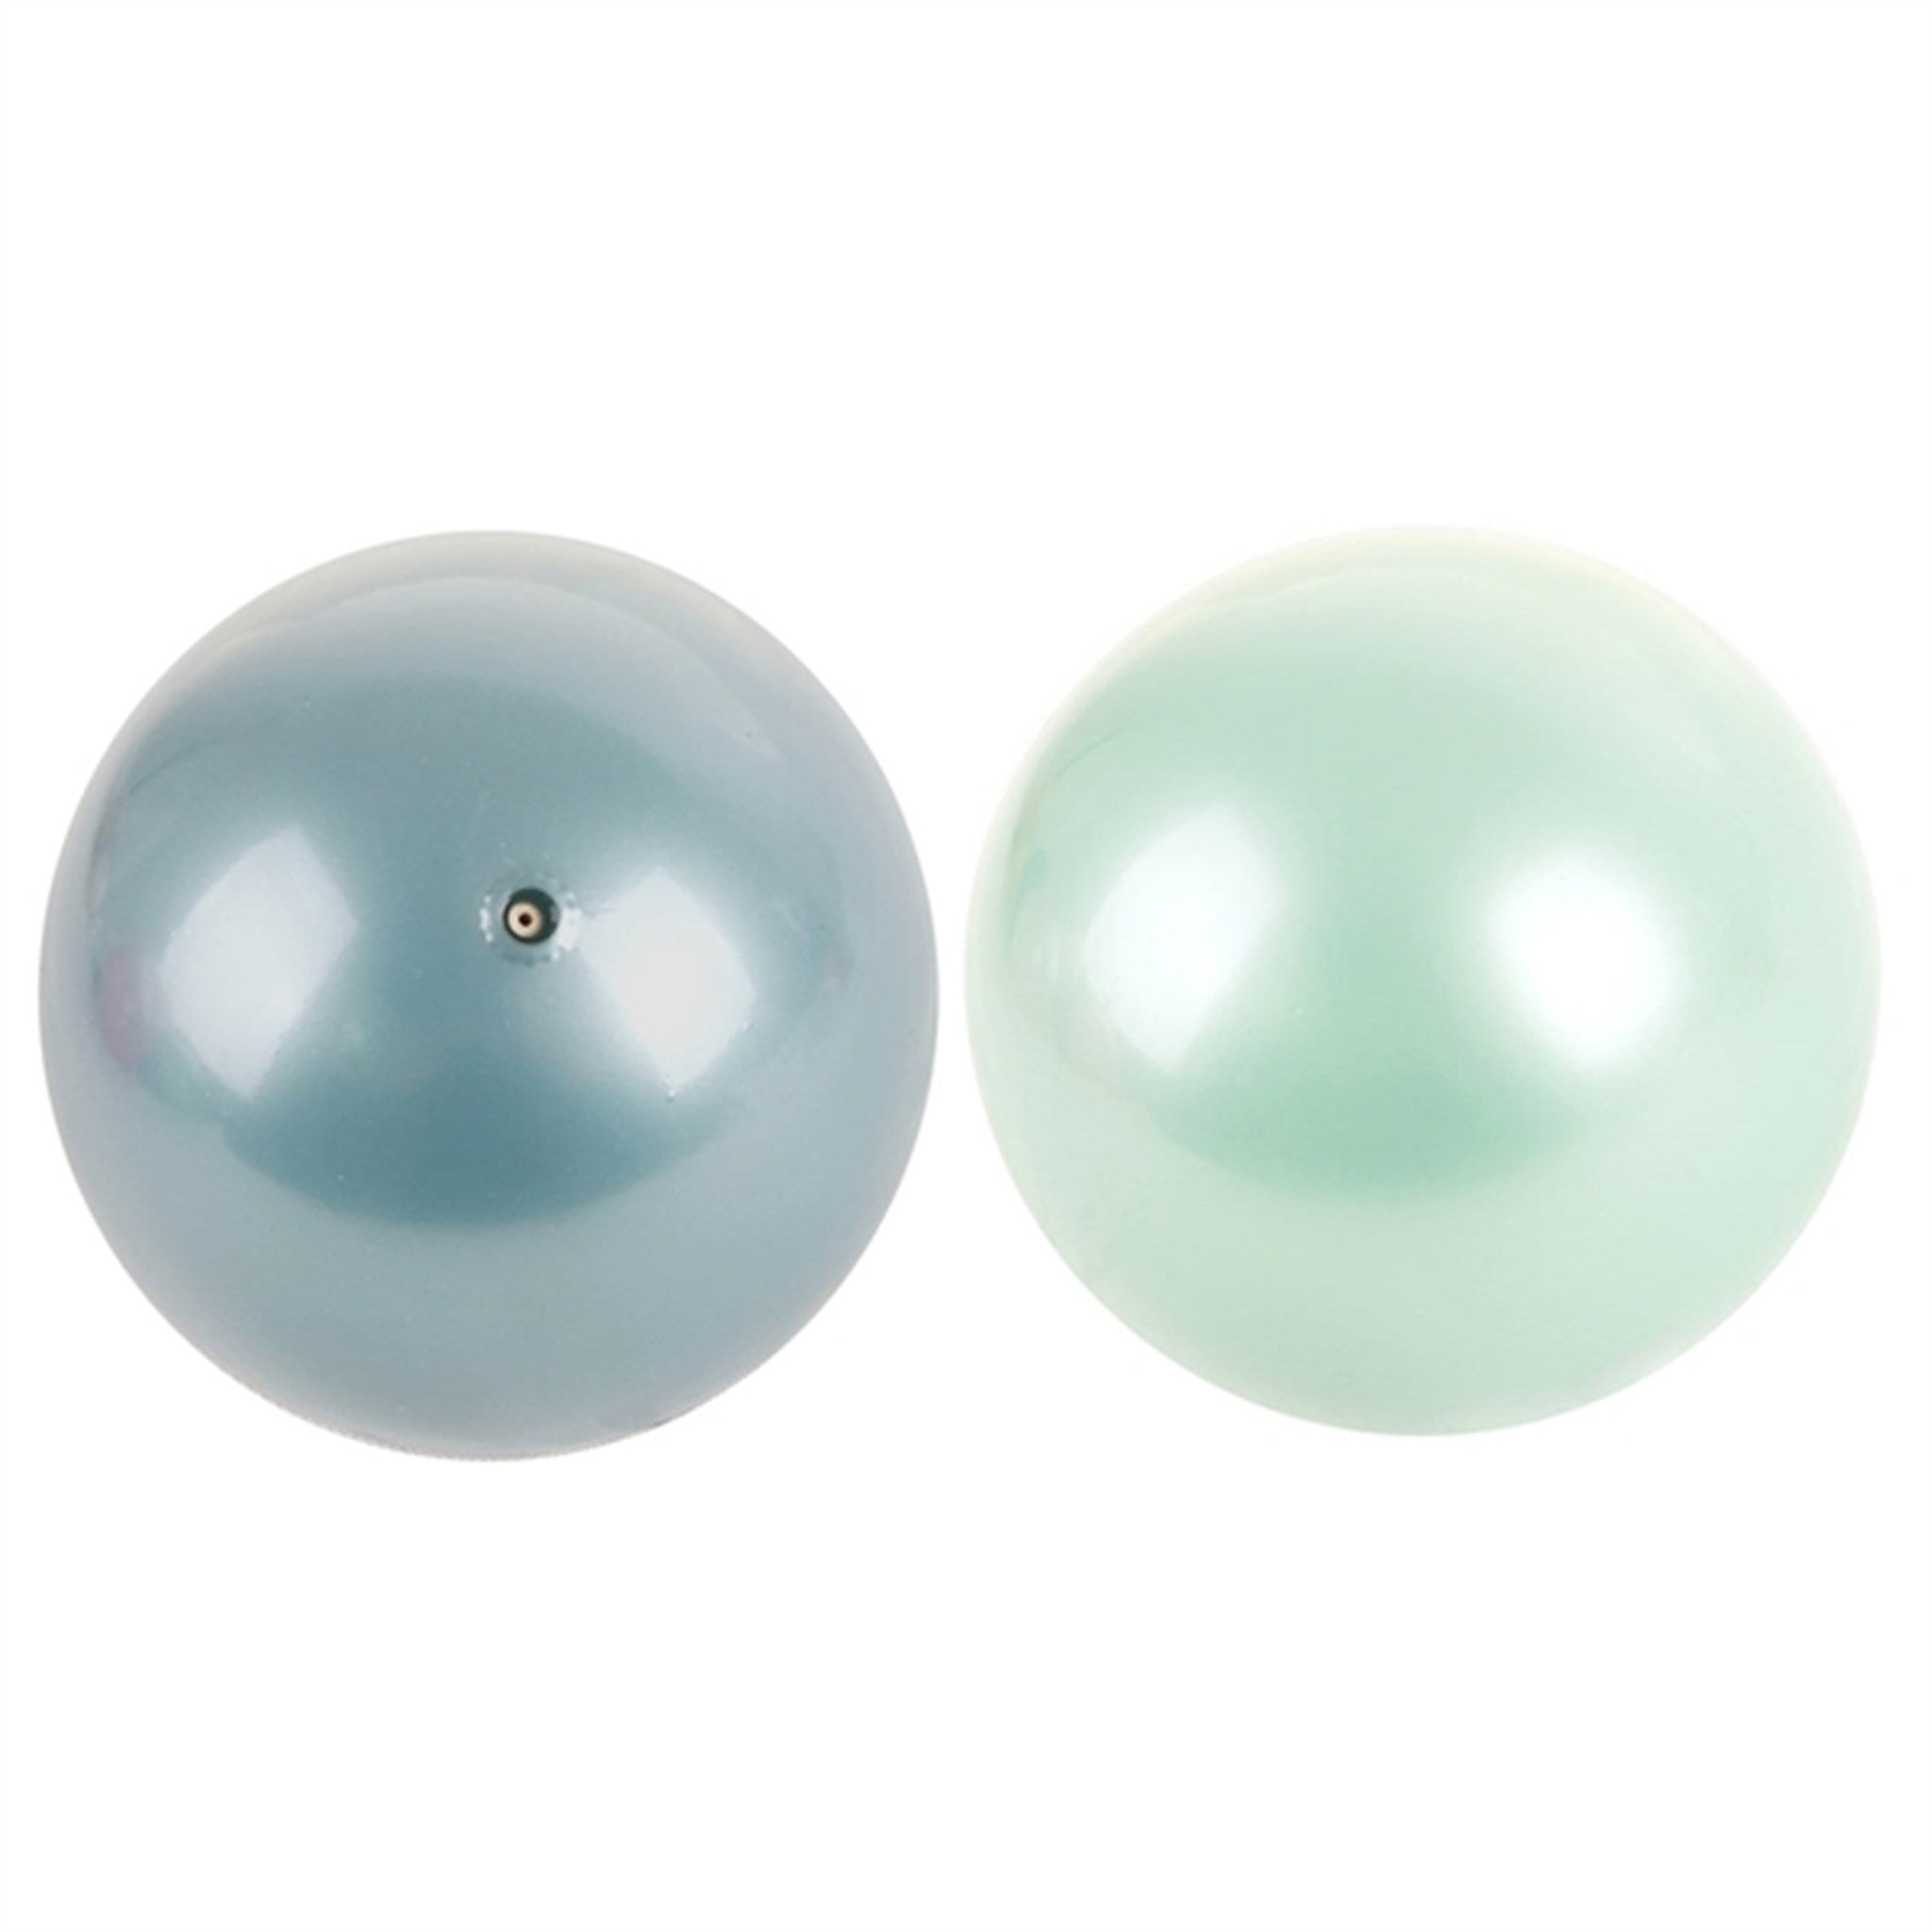 Magni Balls Green/Blue 3